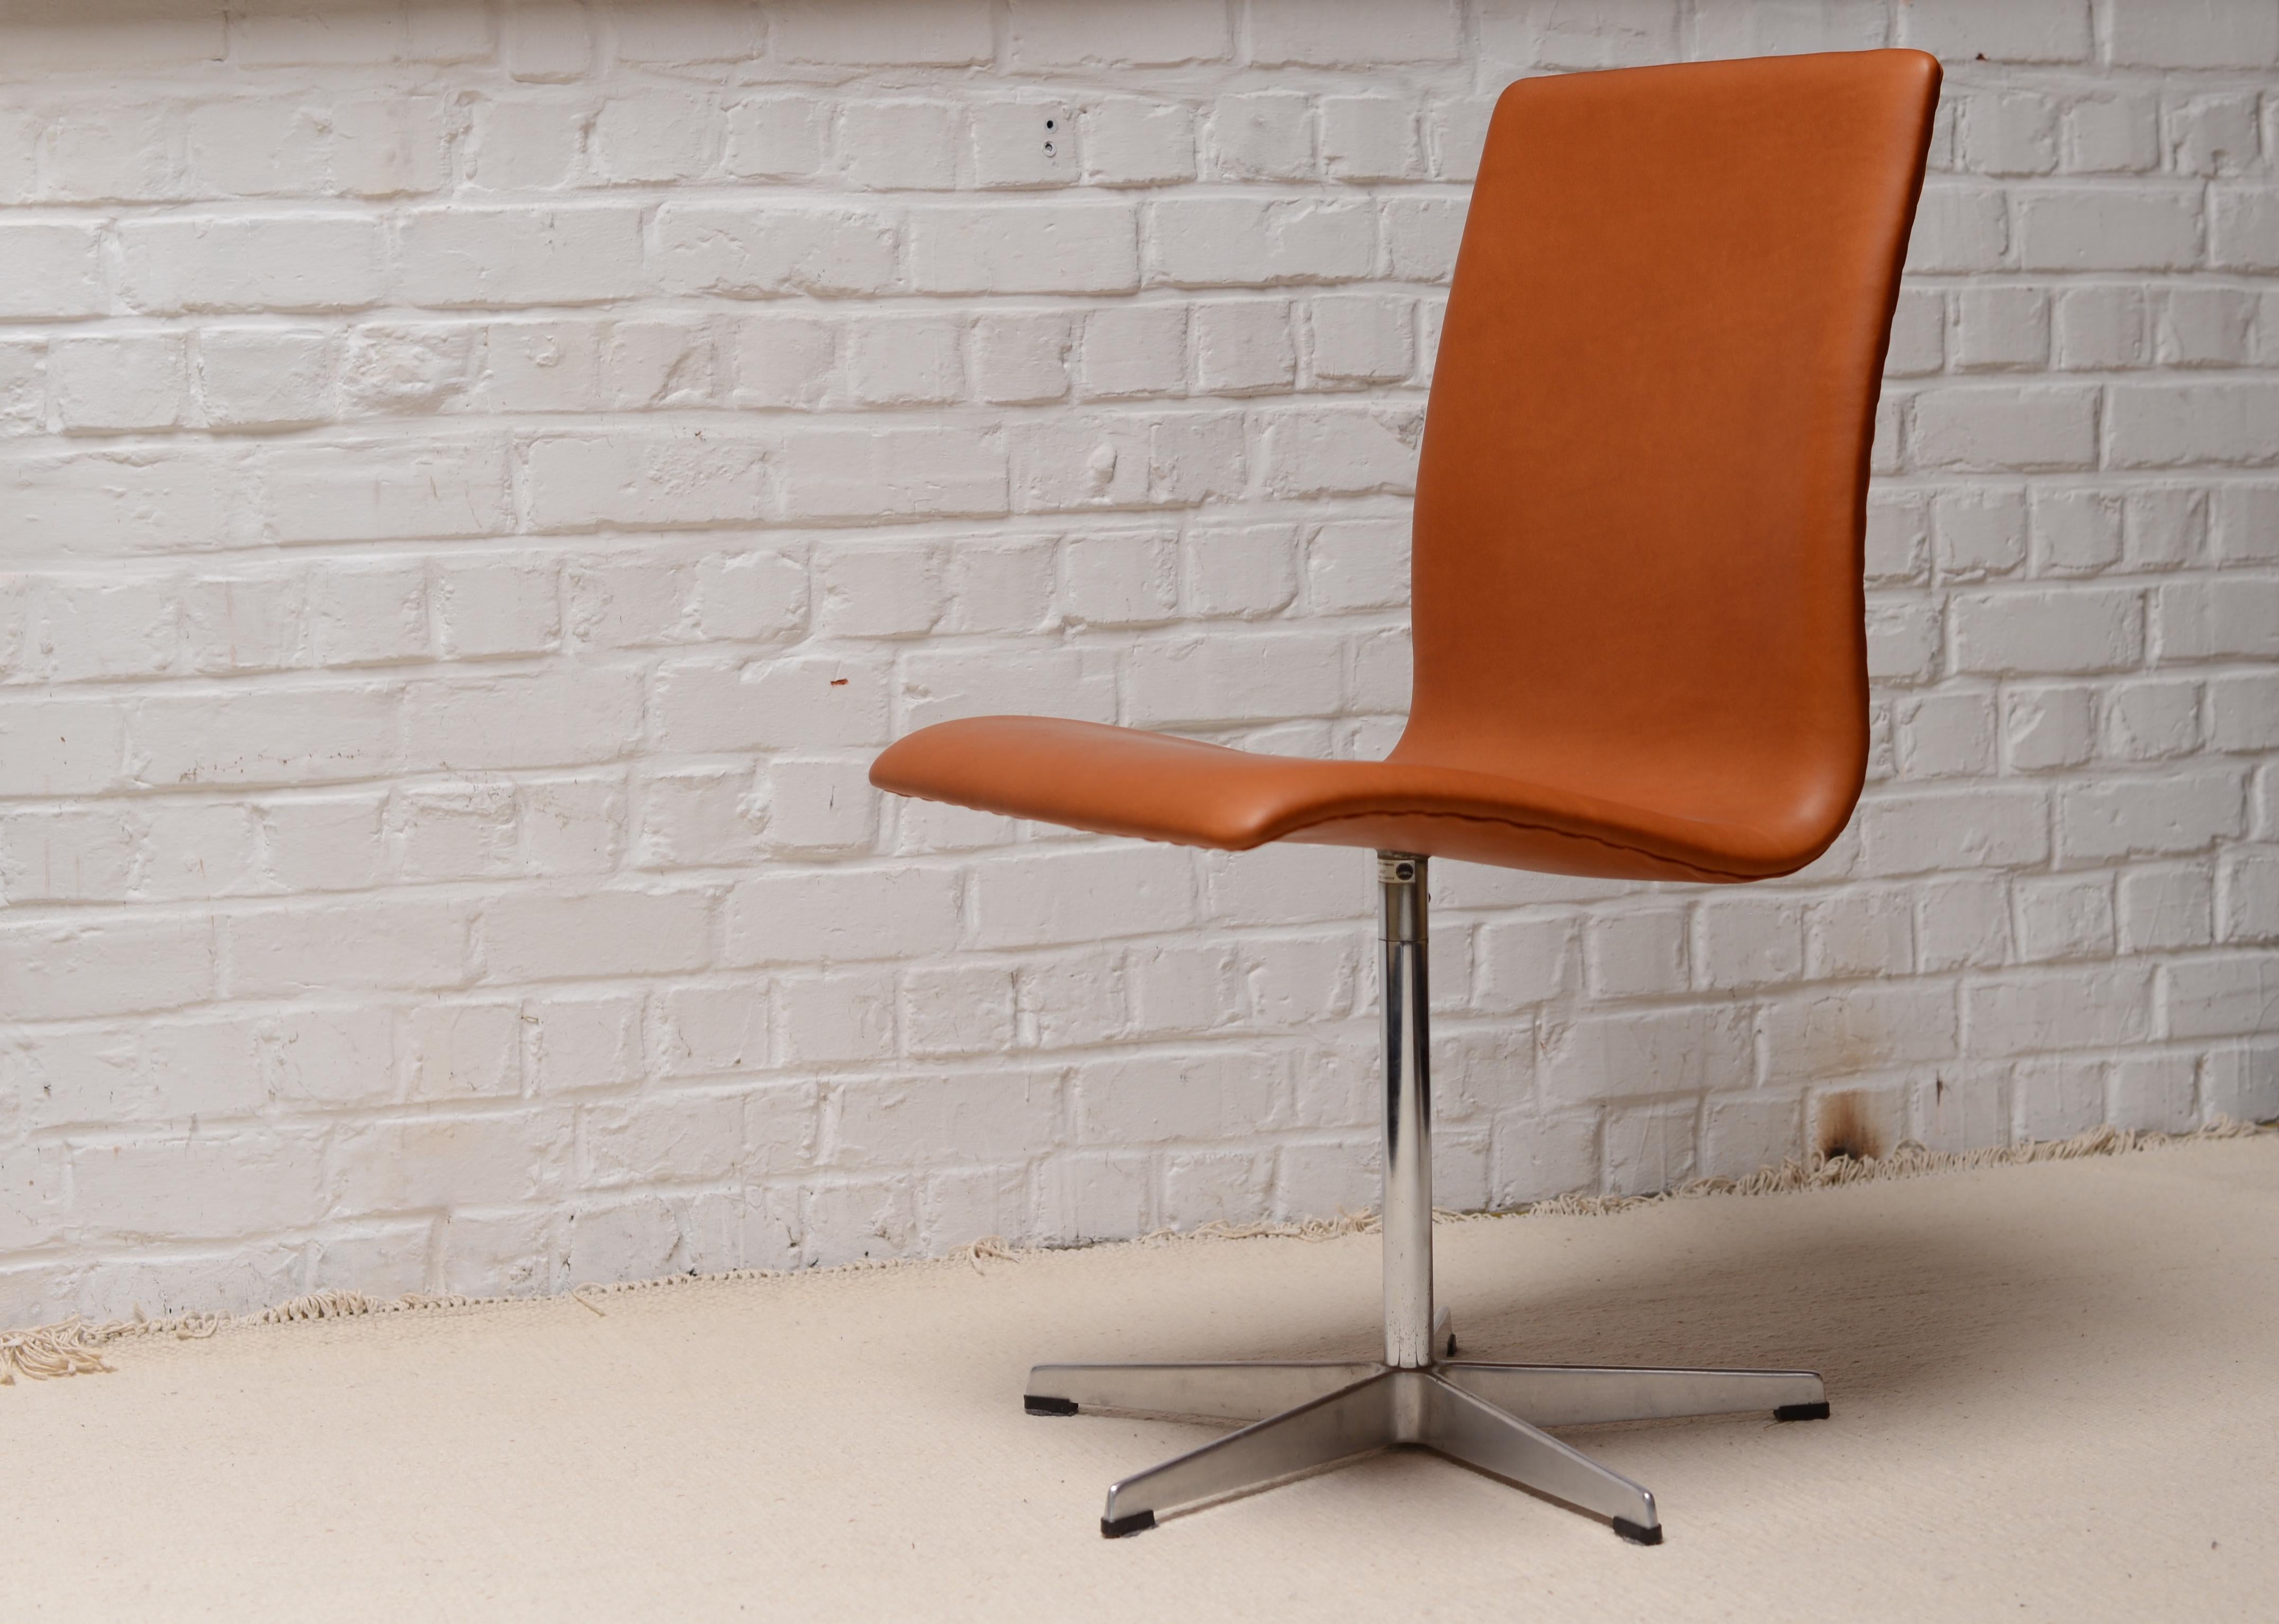 Original Oxford Stuhl vom März 1967, hergestellt von Fritz Hansen in Dänemark. Der Stuhl wurde für den Sonderauftrag des St. Catherine College in Oxford entworfen. Er besteht aus einem Sperrholzrahmen, Leder und aus Aluminium gegossenen Füßen. Das